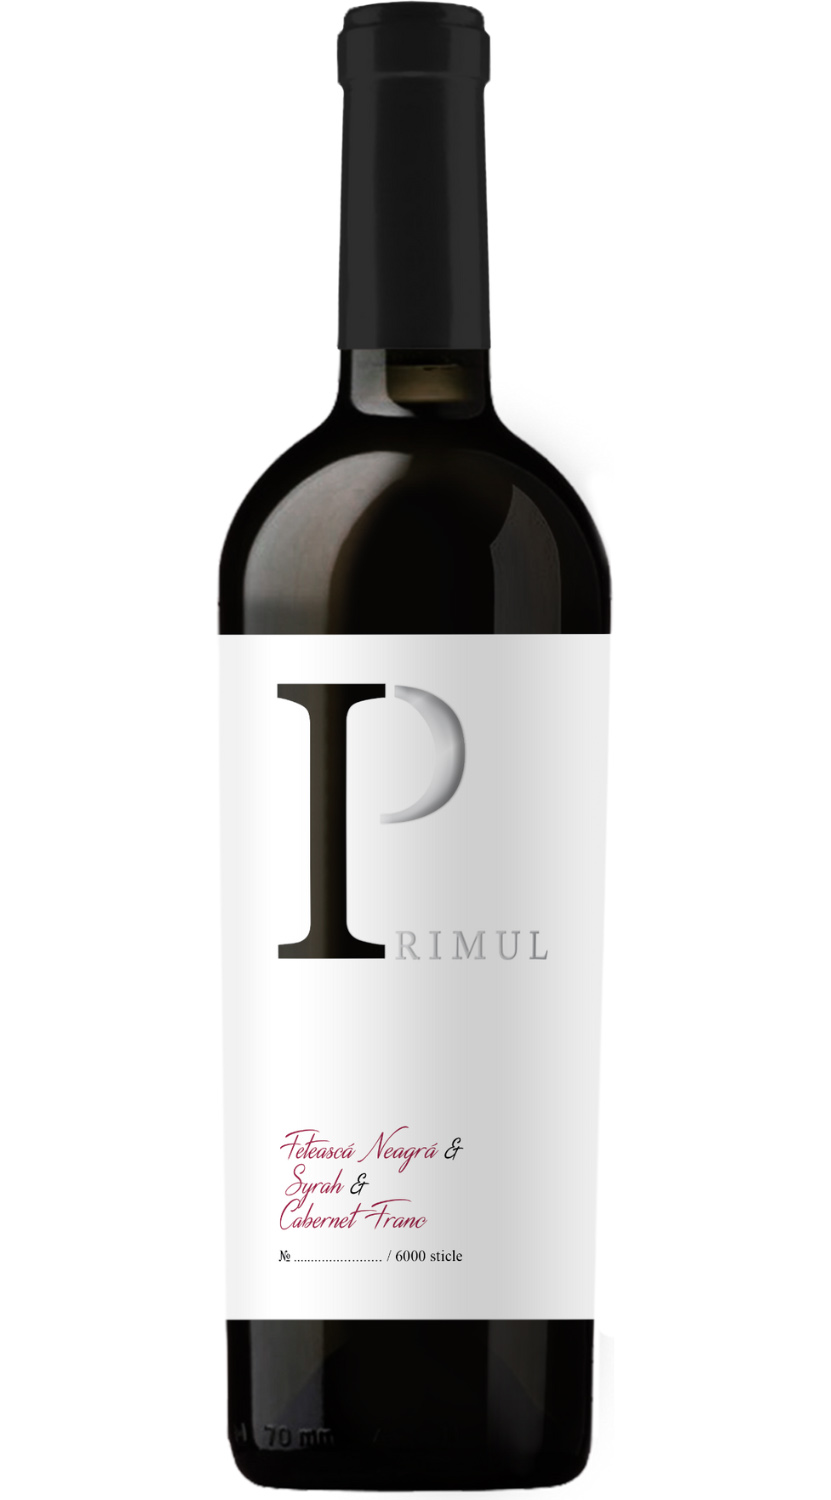 Vin rosu - Primul - Feteasca Neagra, Syrah si Cabernet Franc, sec, 2020 | Balla Geza Winery